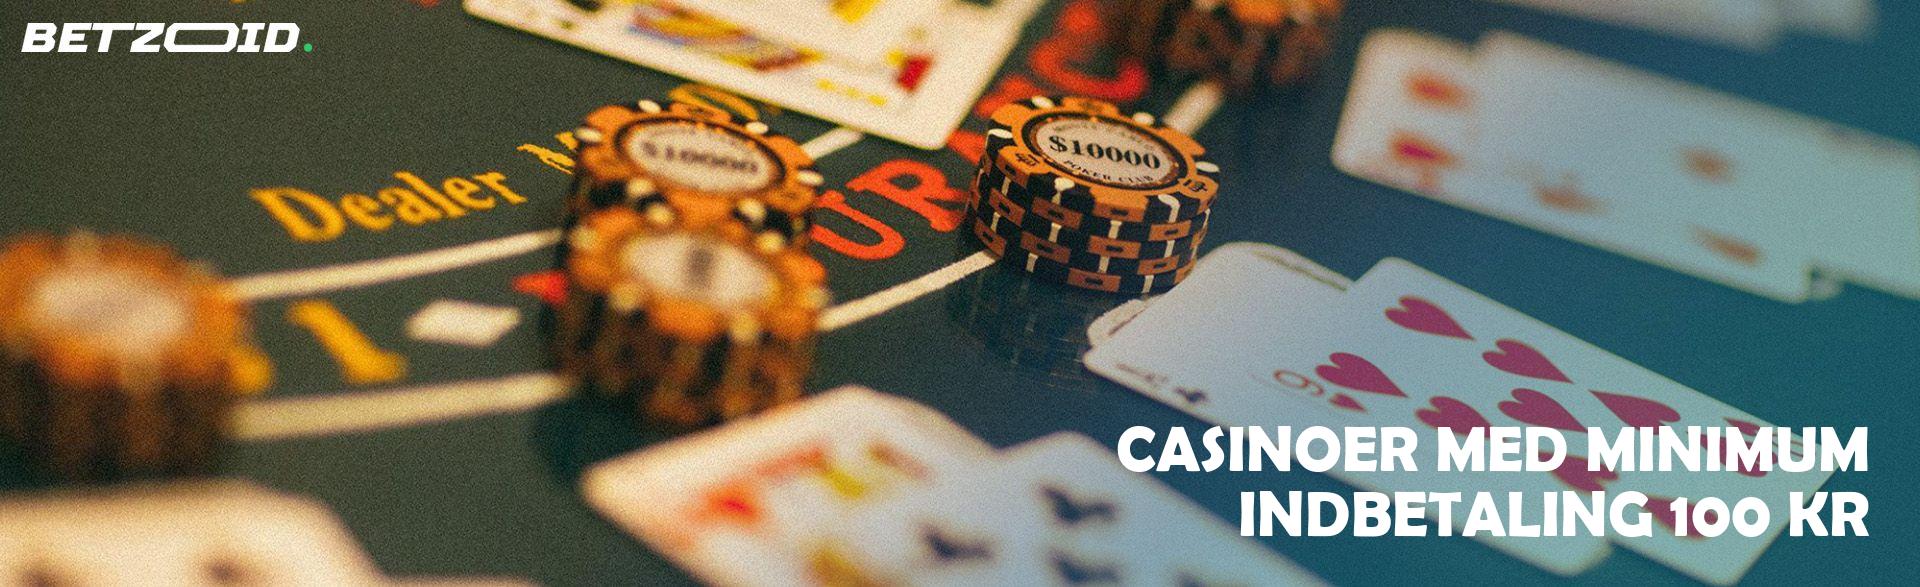 Casinoer Med Minimum Indbetaling 100 Kr.